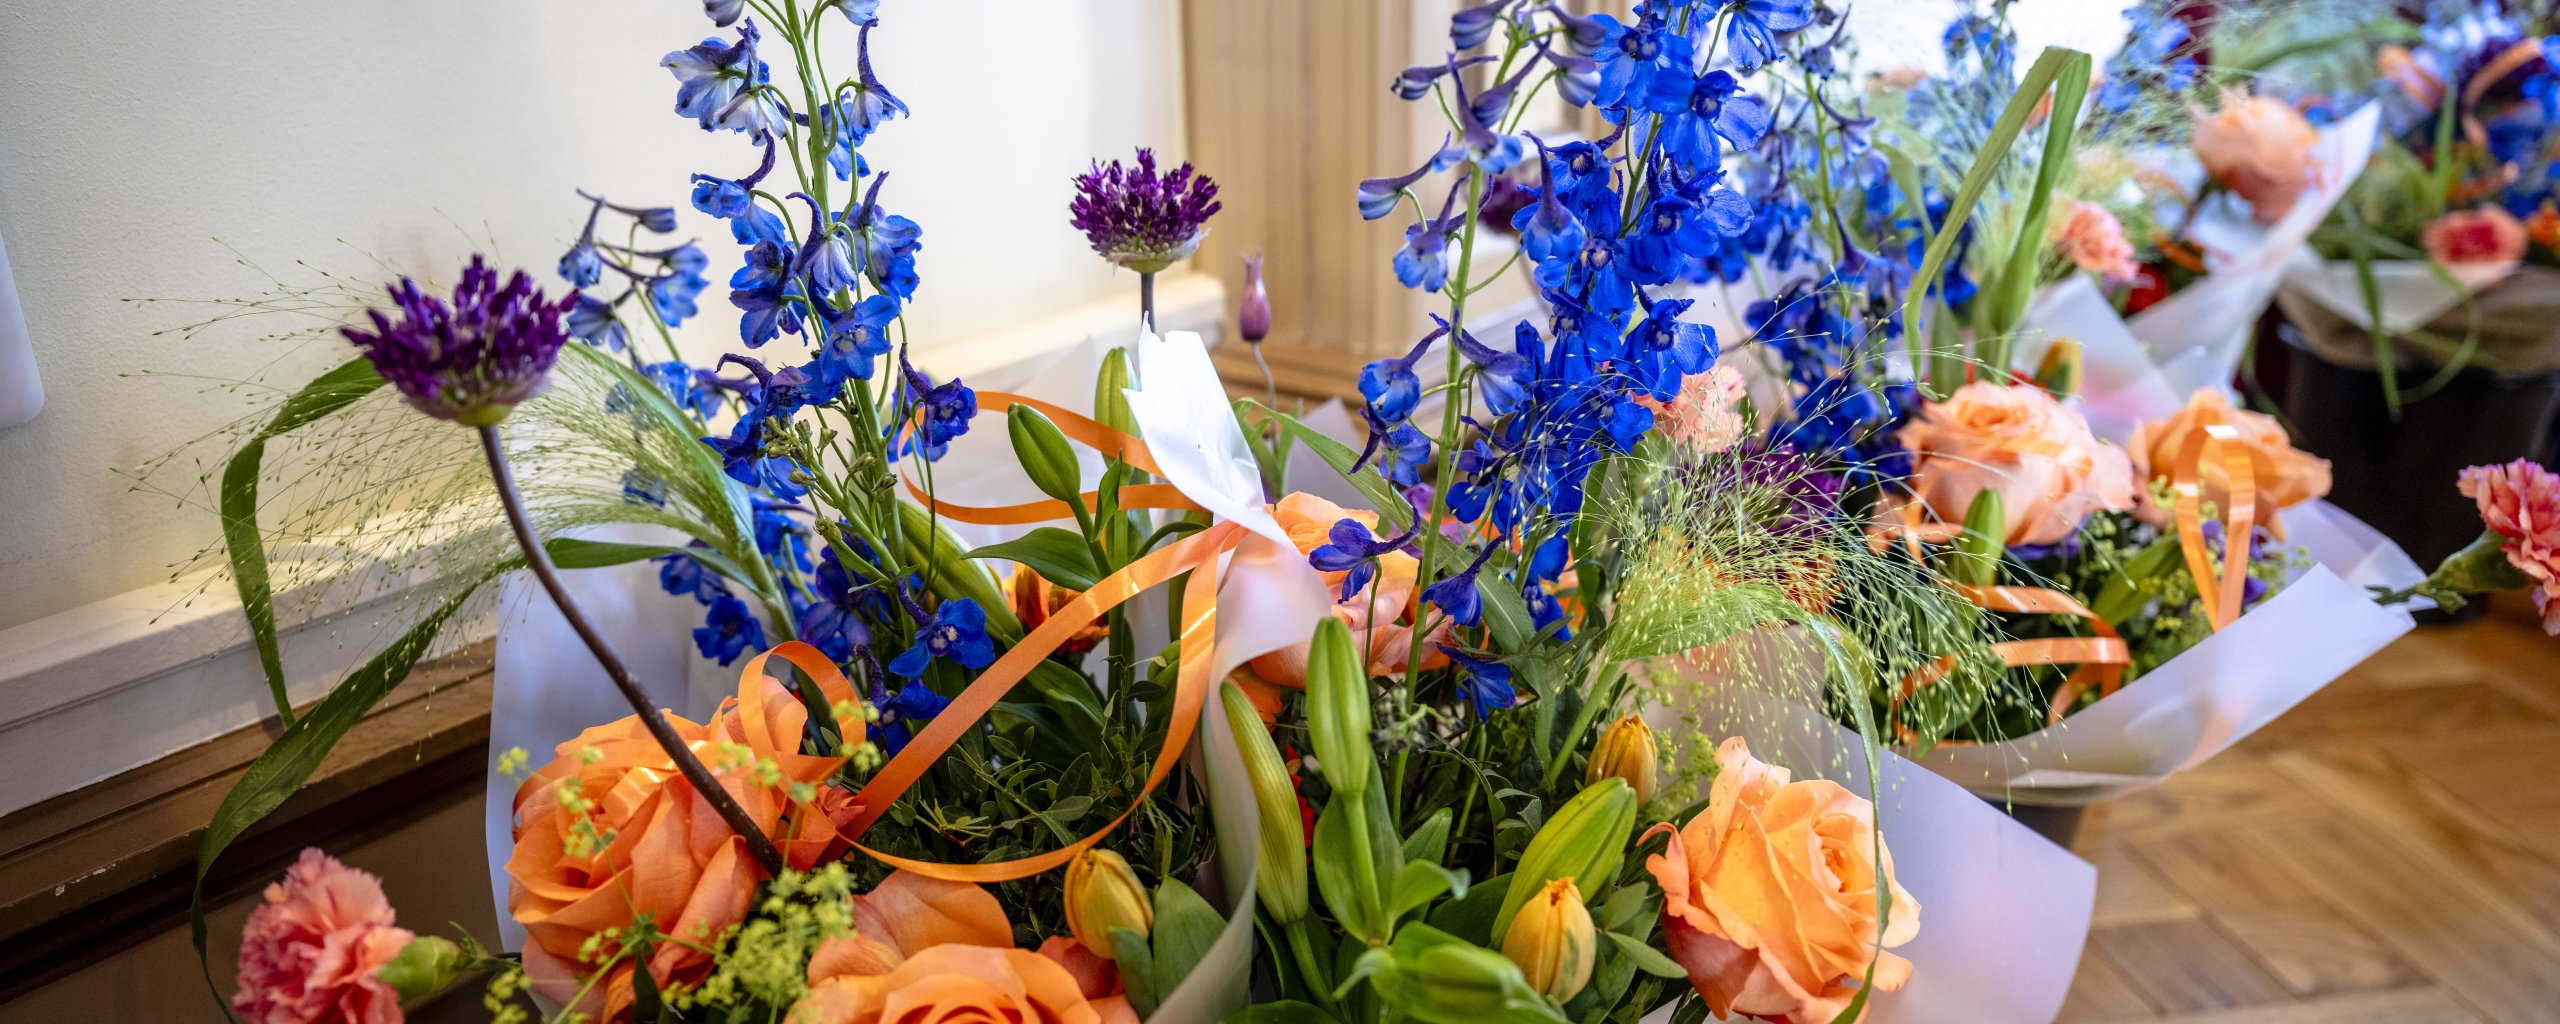 Bloemen die uitgedeeld worden aan de gedecoreerden op lintjesdag (foto van Jan Kok)